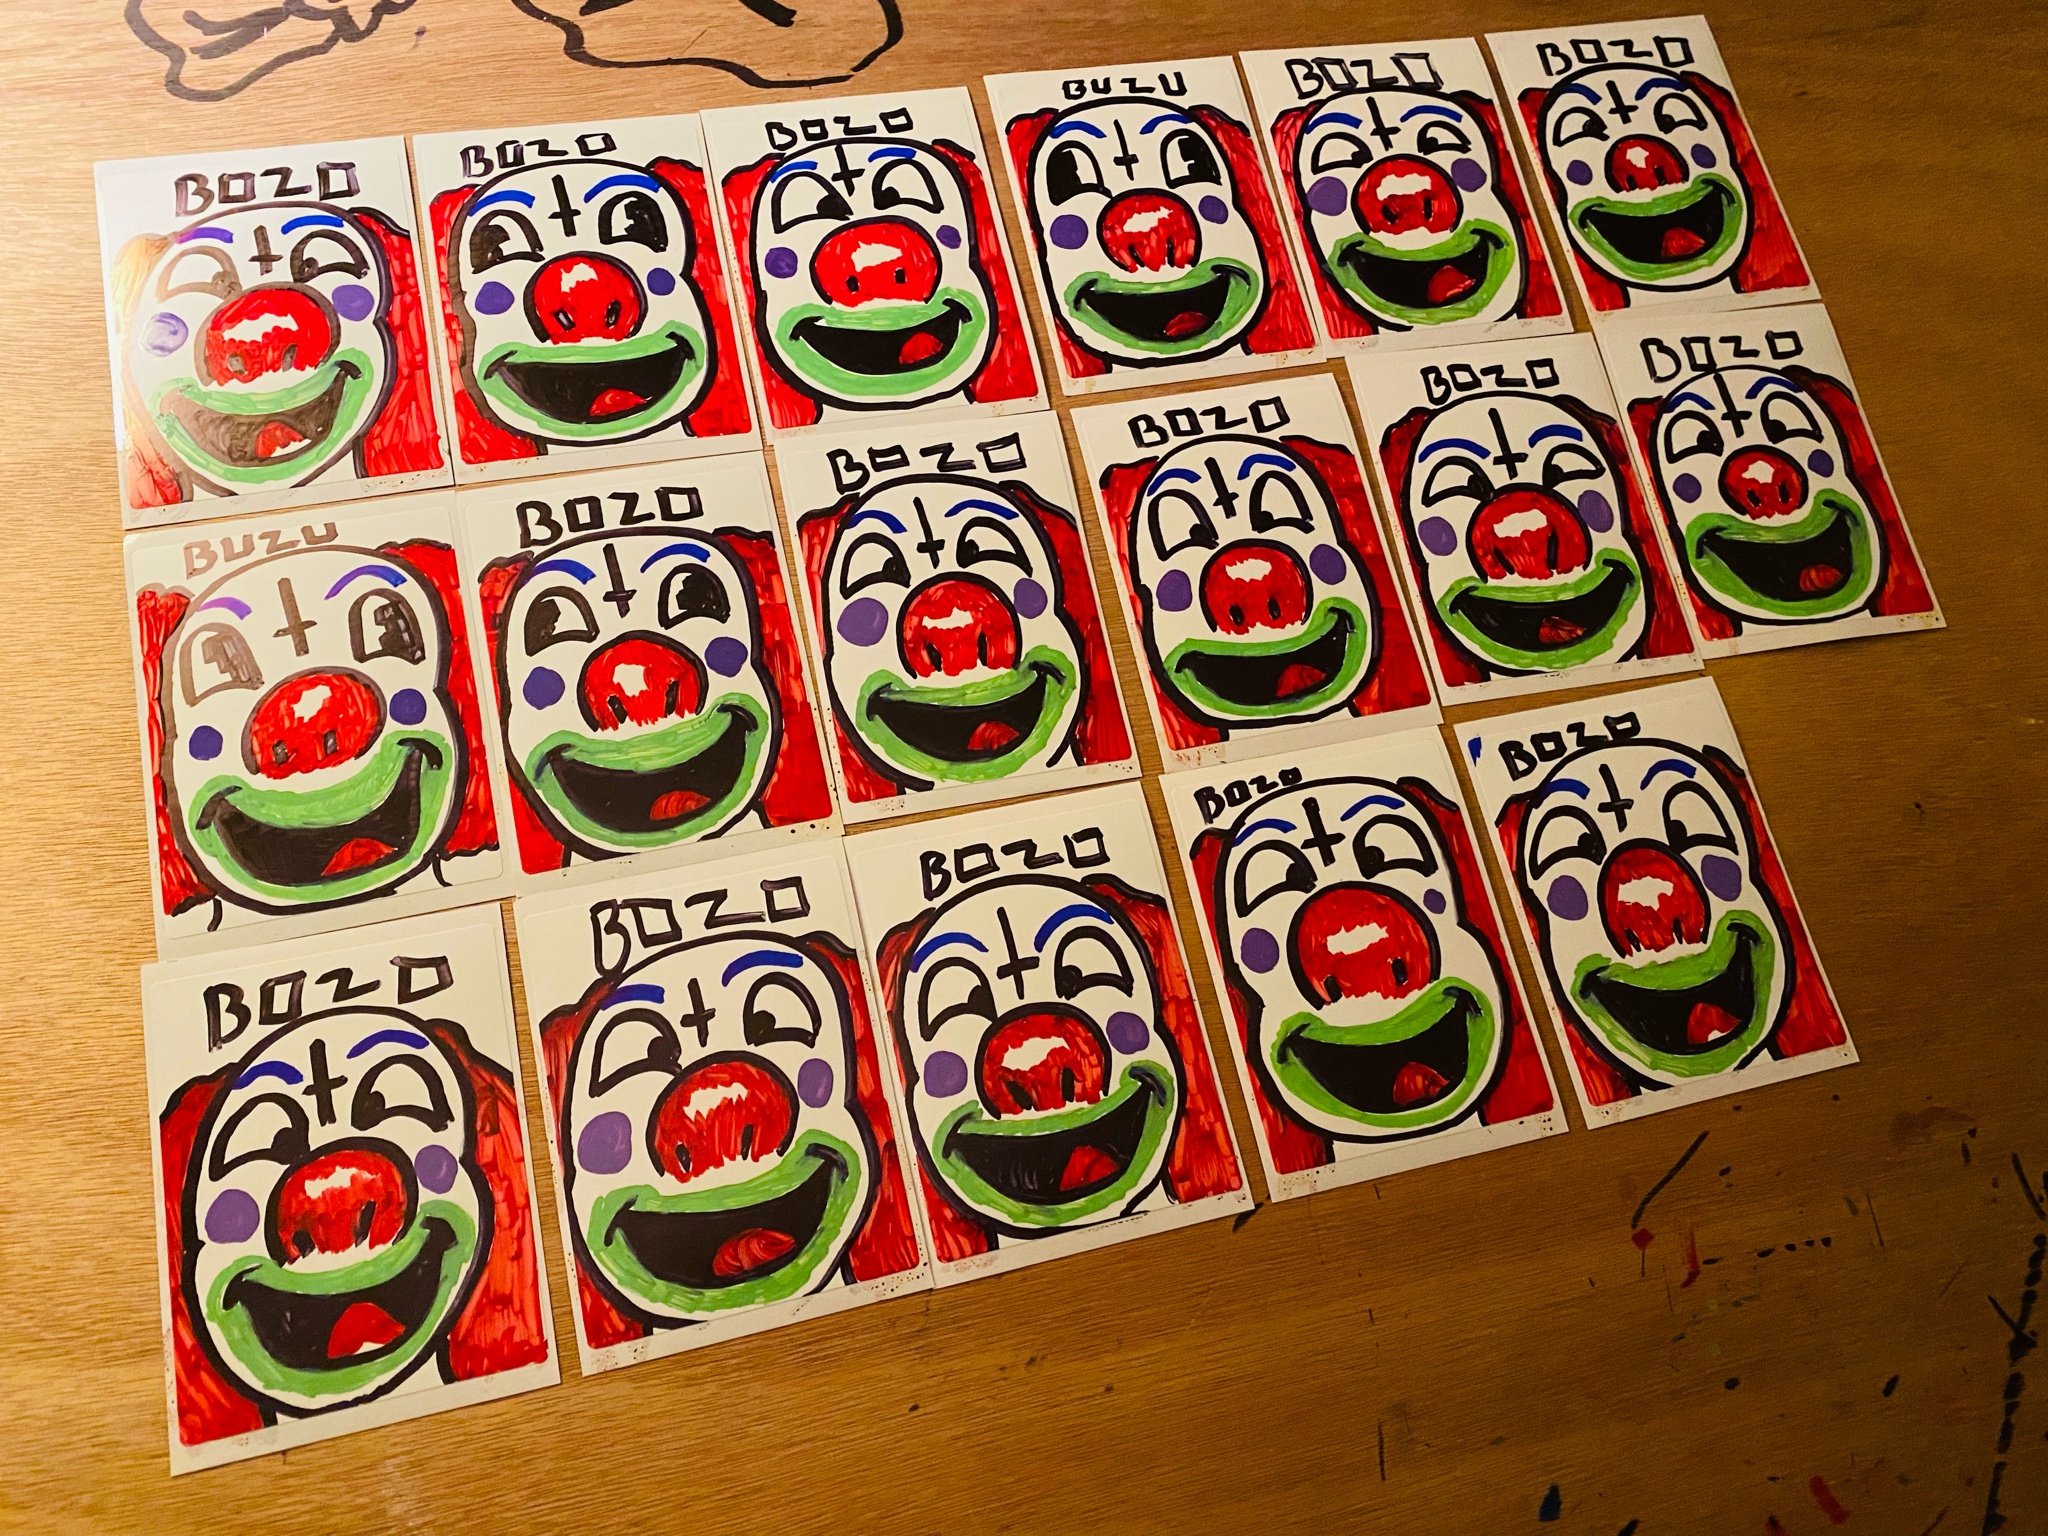 Bozo Stickers, marker.